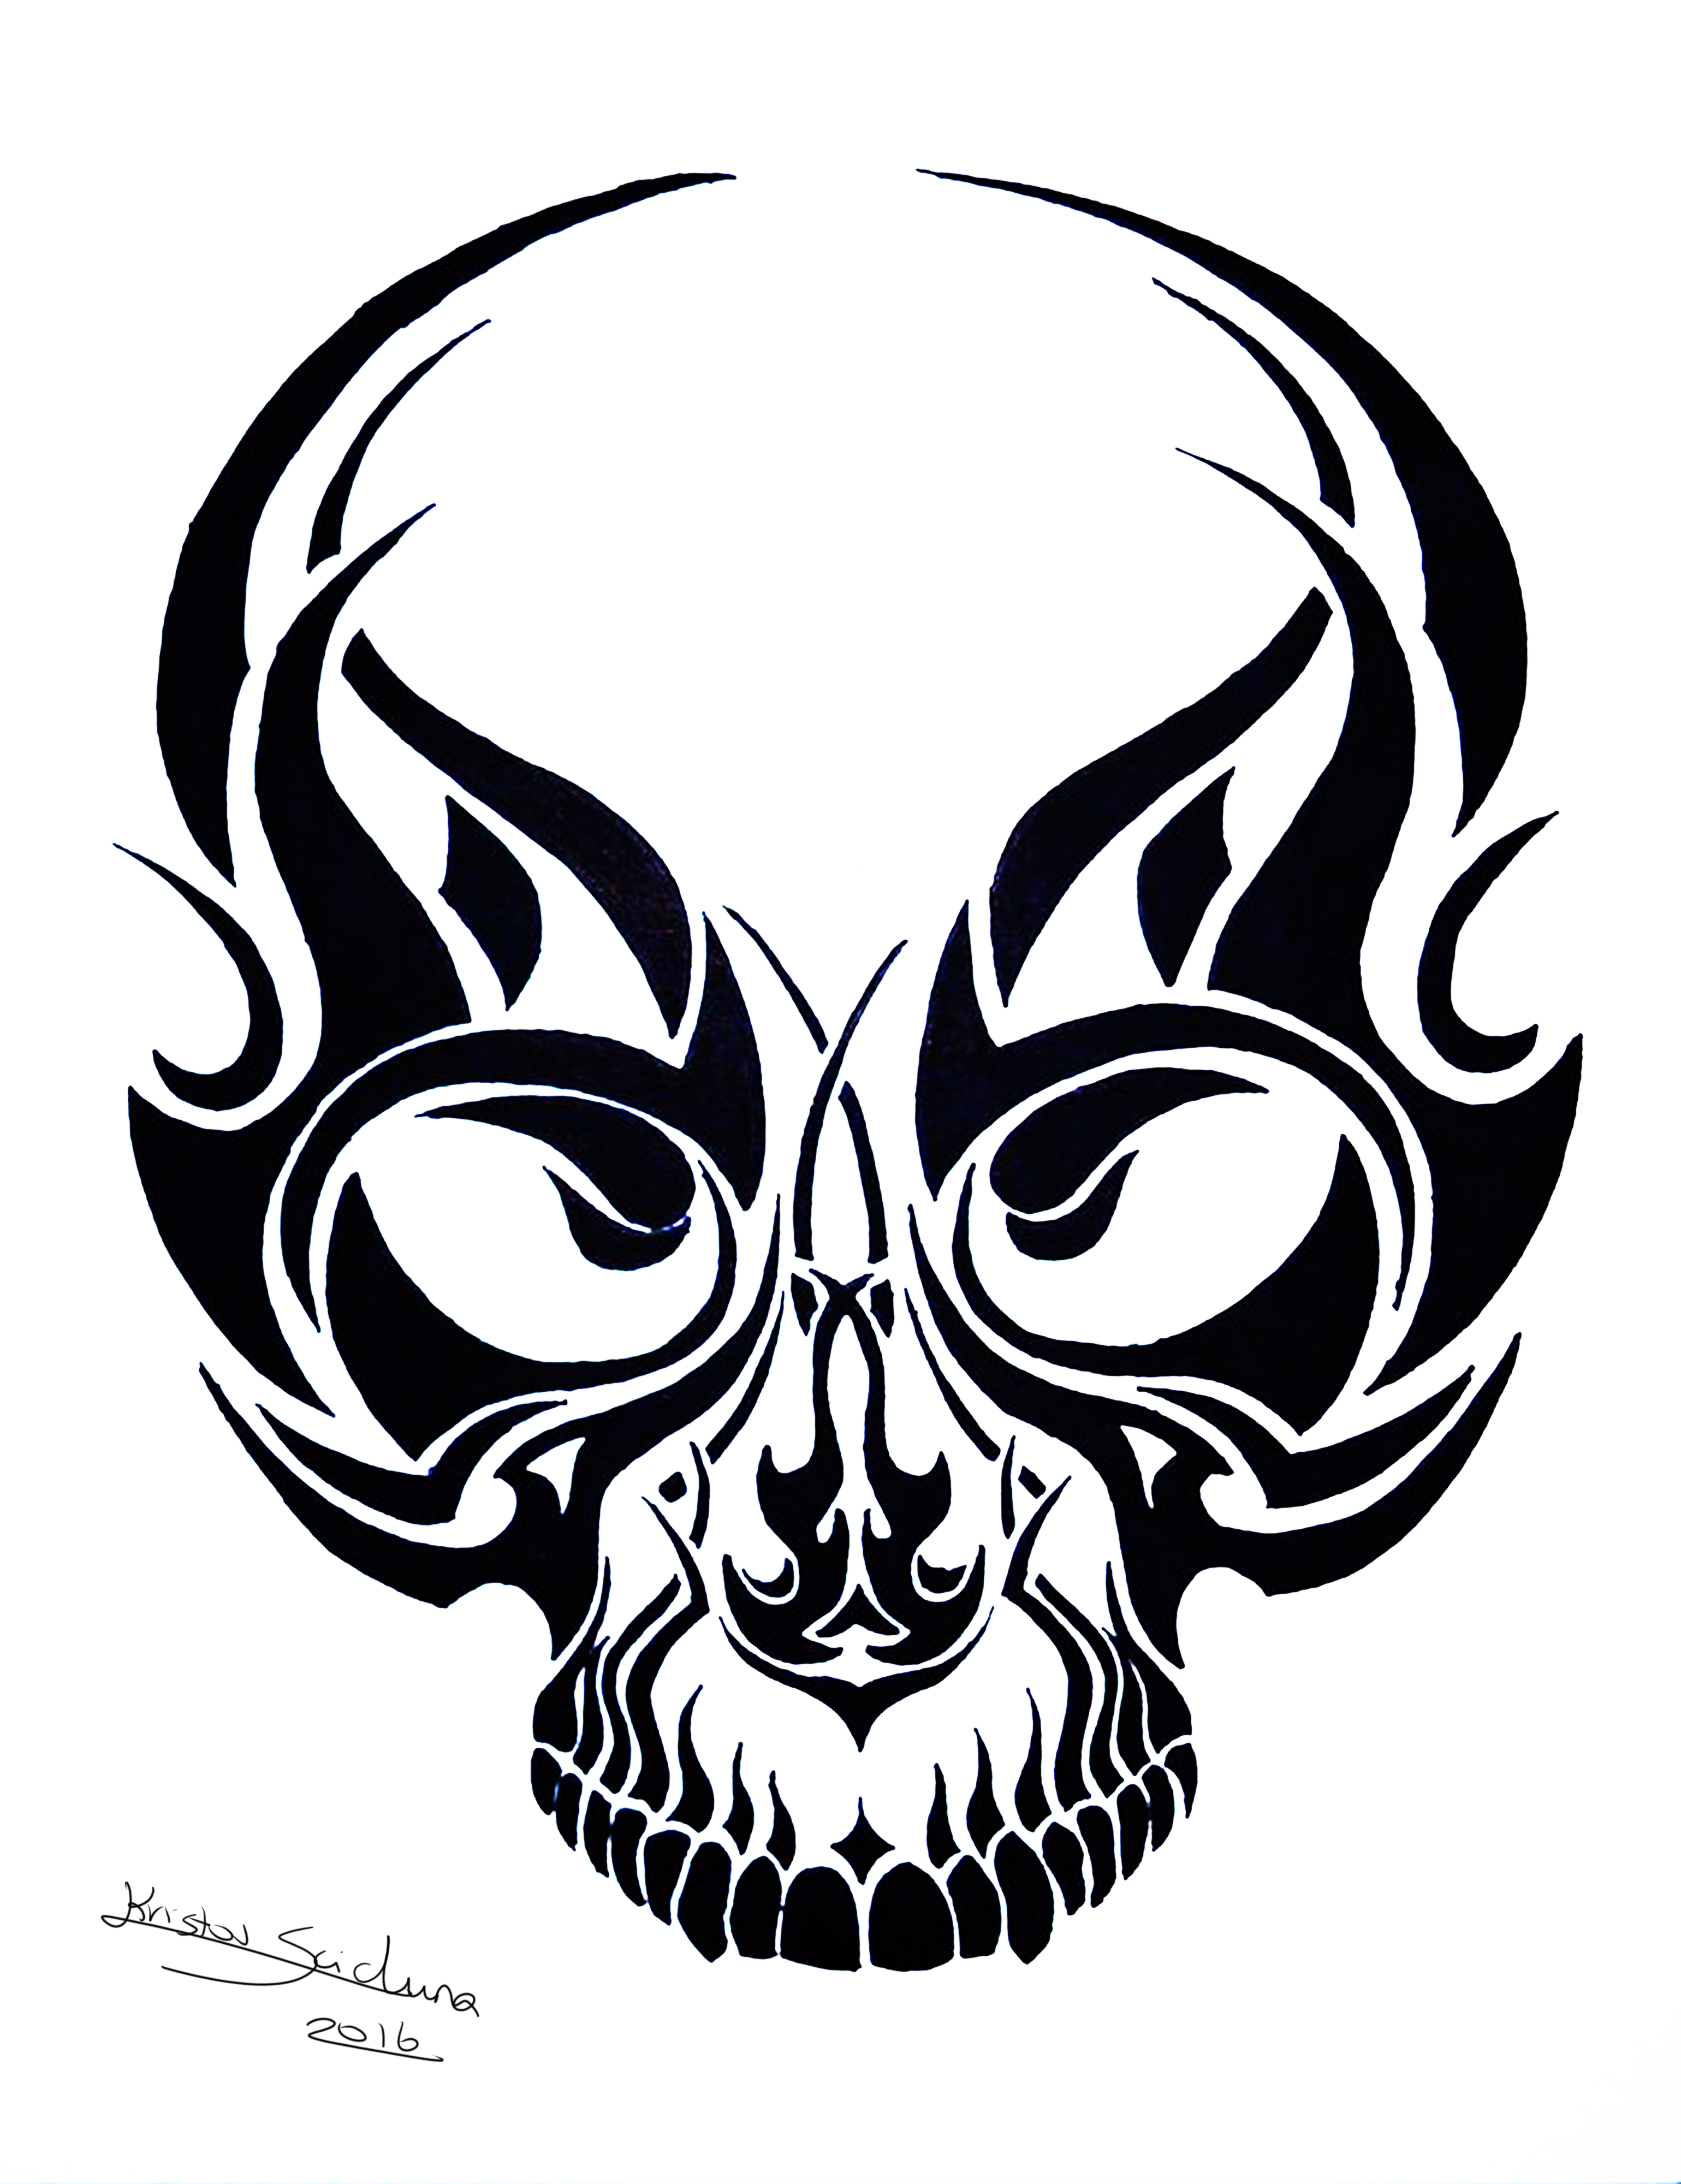 Tribal Skull Tattoo Design no. 2- Kristov Scicluna by ArtistKS on DeviantArt